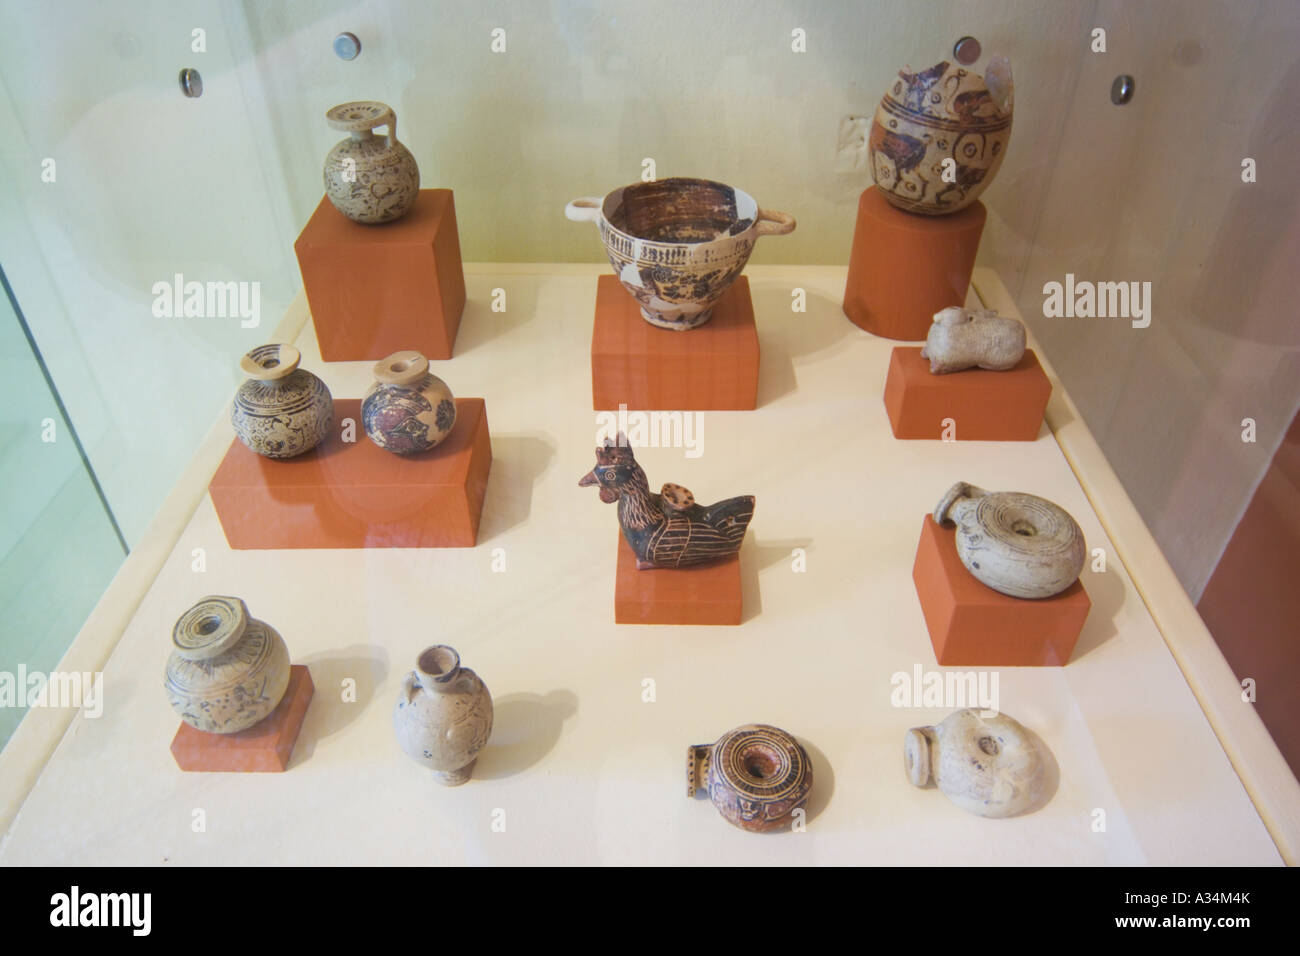 Île grecque Paros Parikia Musée Archéologique de Paros collection de petits objets, y compris lampe à pétrole et flacon de parfum Banque D'Images